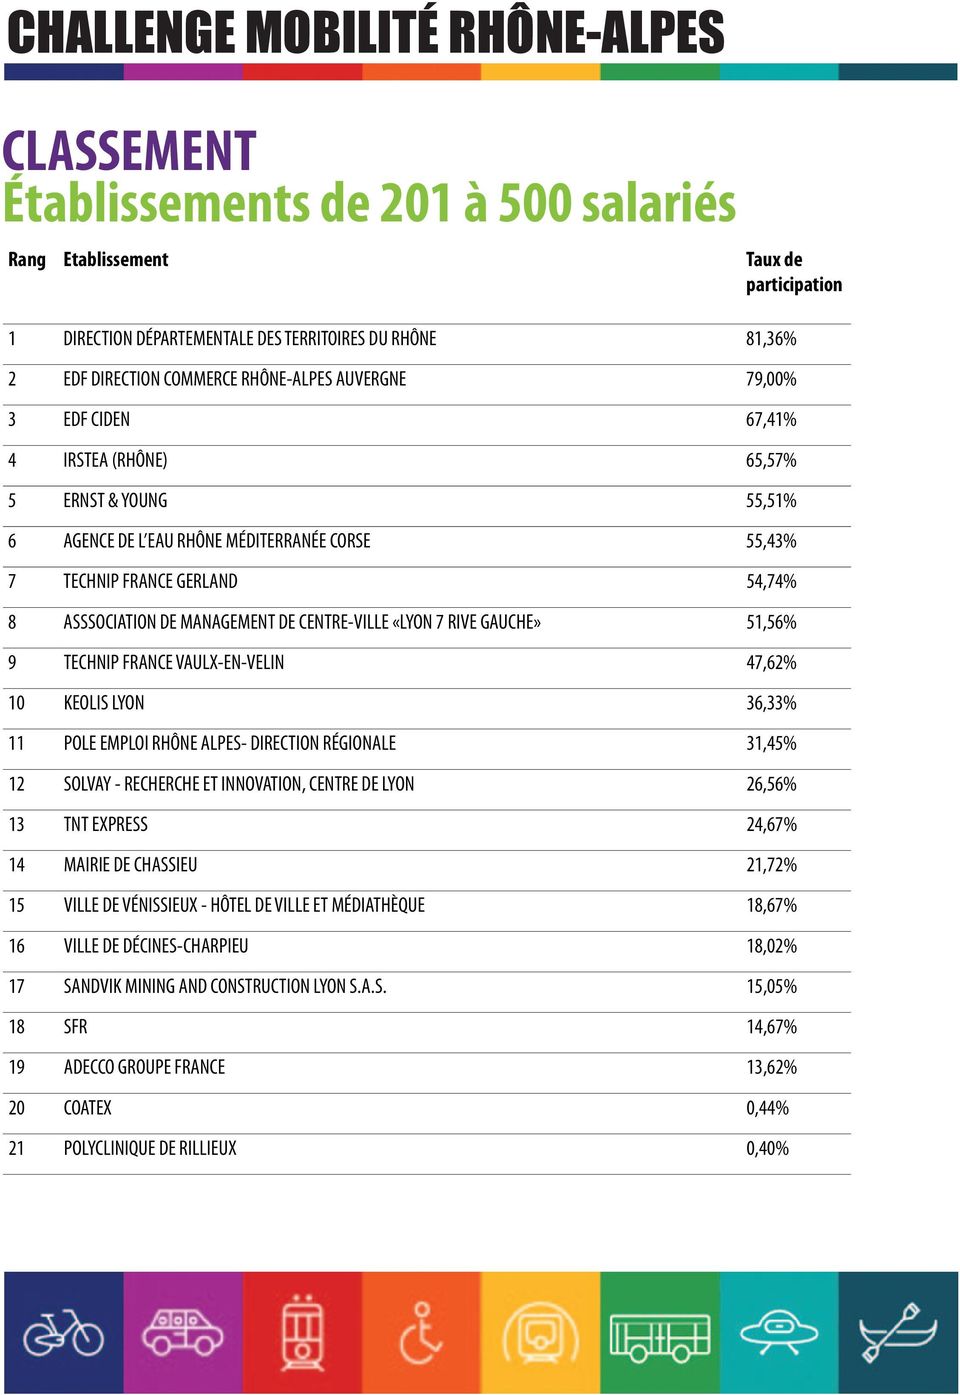 VAULX-EN-VELIN 47,62% 10 KEOLIS LYON 36,33% 11 POLE EMPLOI RHÔNE ALPES- DIRECTION RÉGIONALE 31,45% 12 SOLVAY - RECHERCHE ET INNOVATION, CENTRE DE LYON 26,56% 13 TNT EXPRESS 24,67% 14 MAIRIE DE